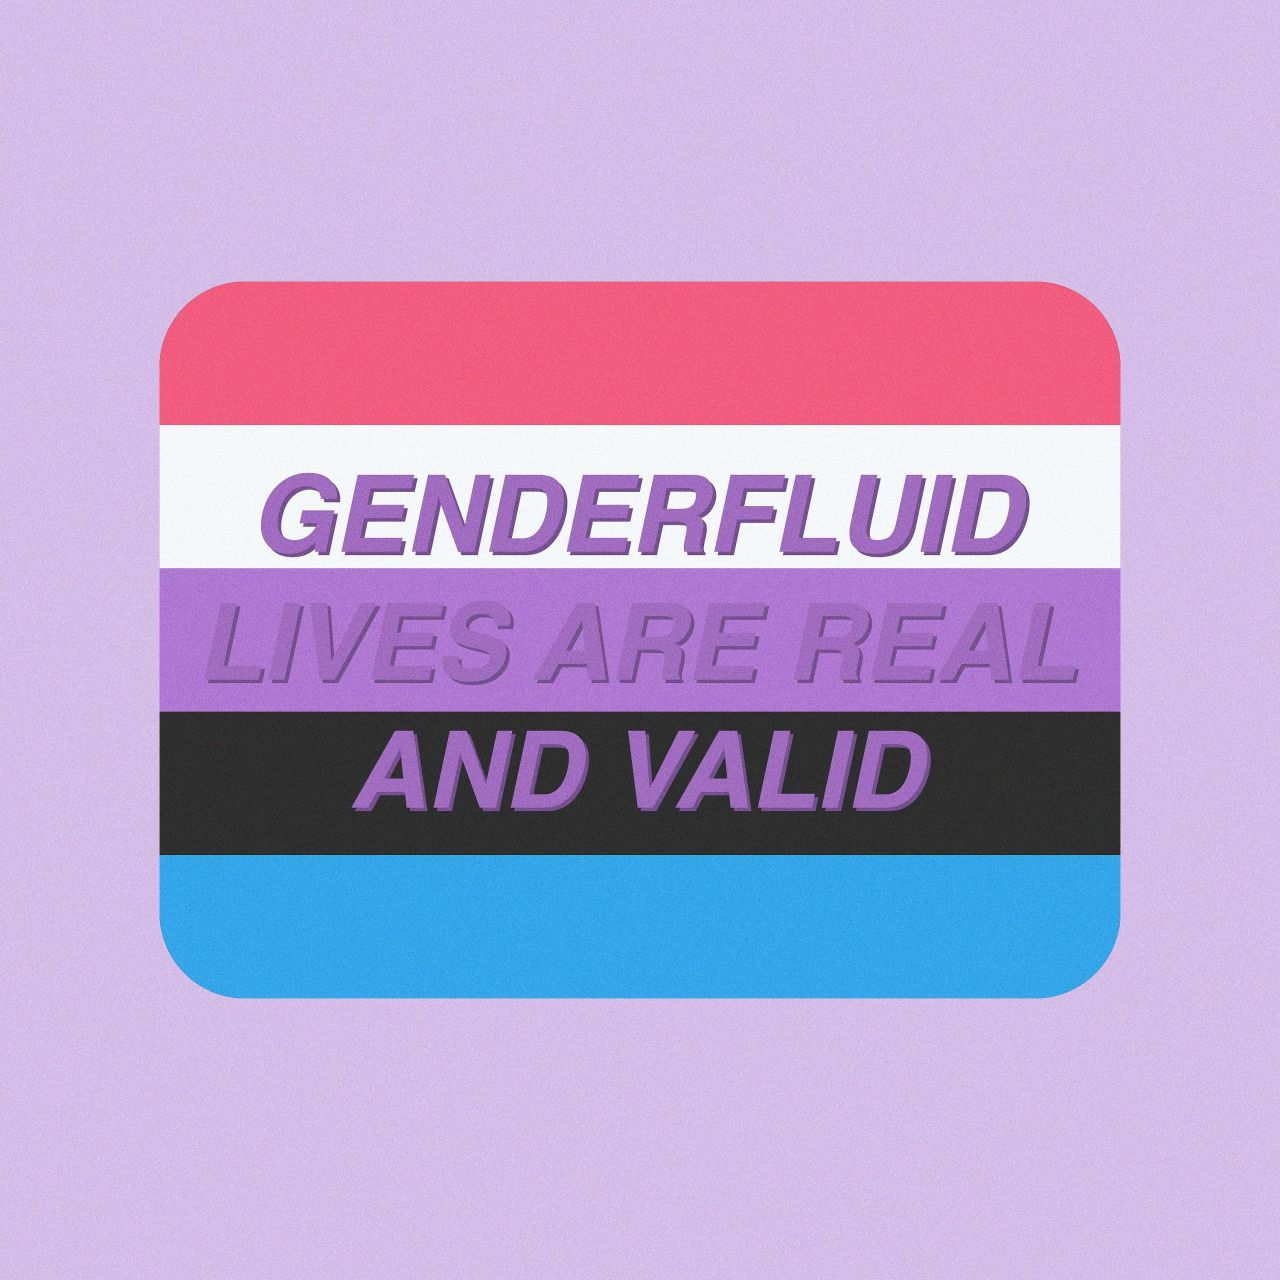 Genderfluid flag Tumblr posts